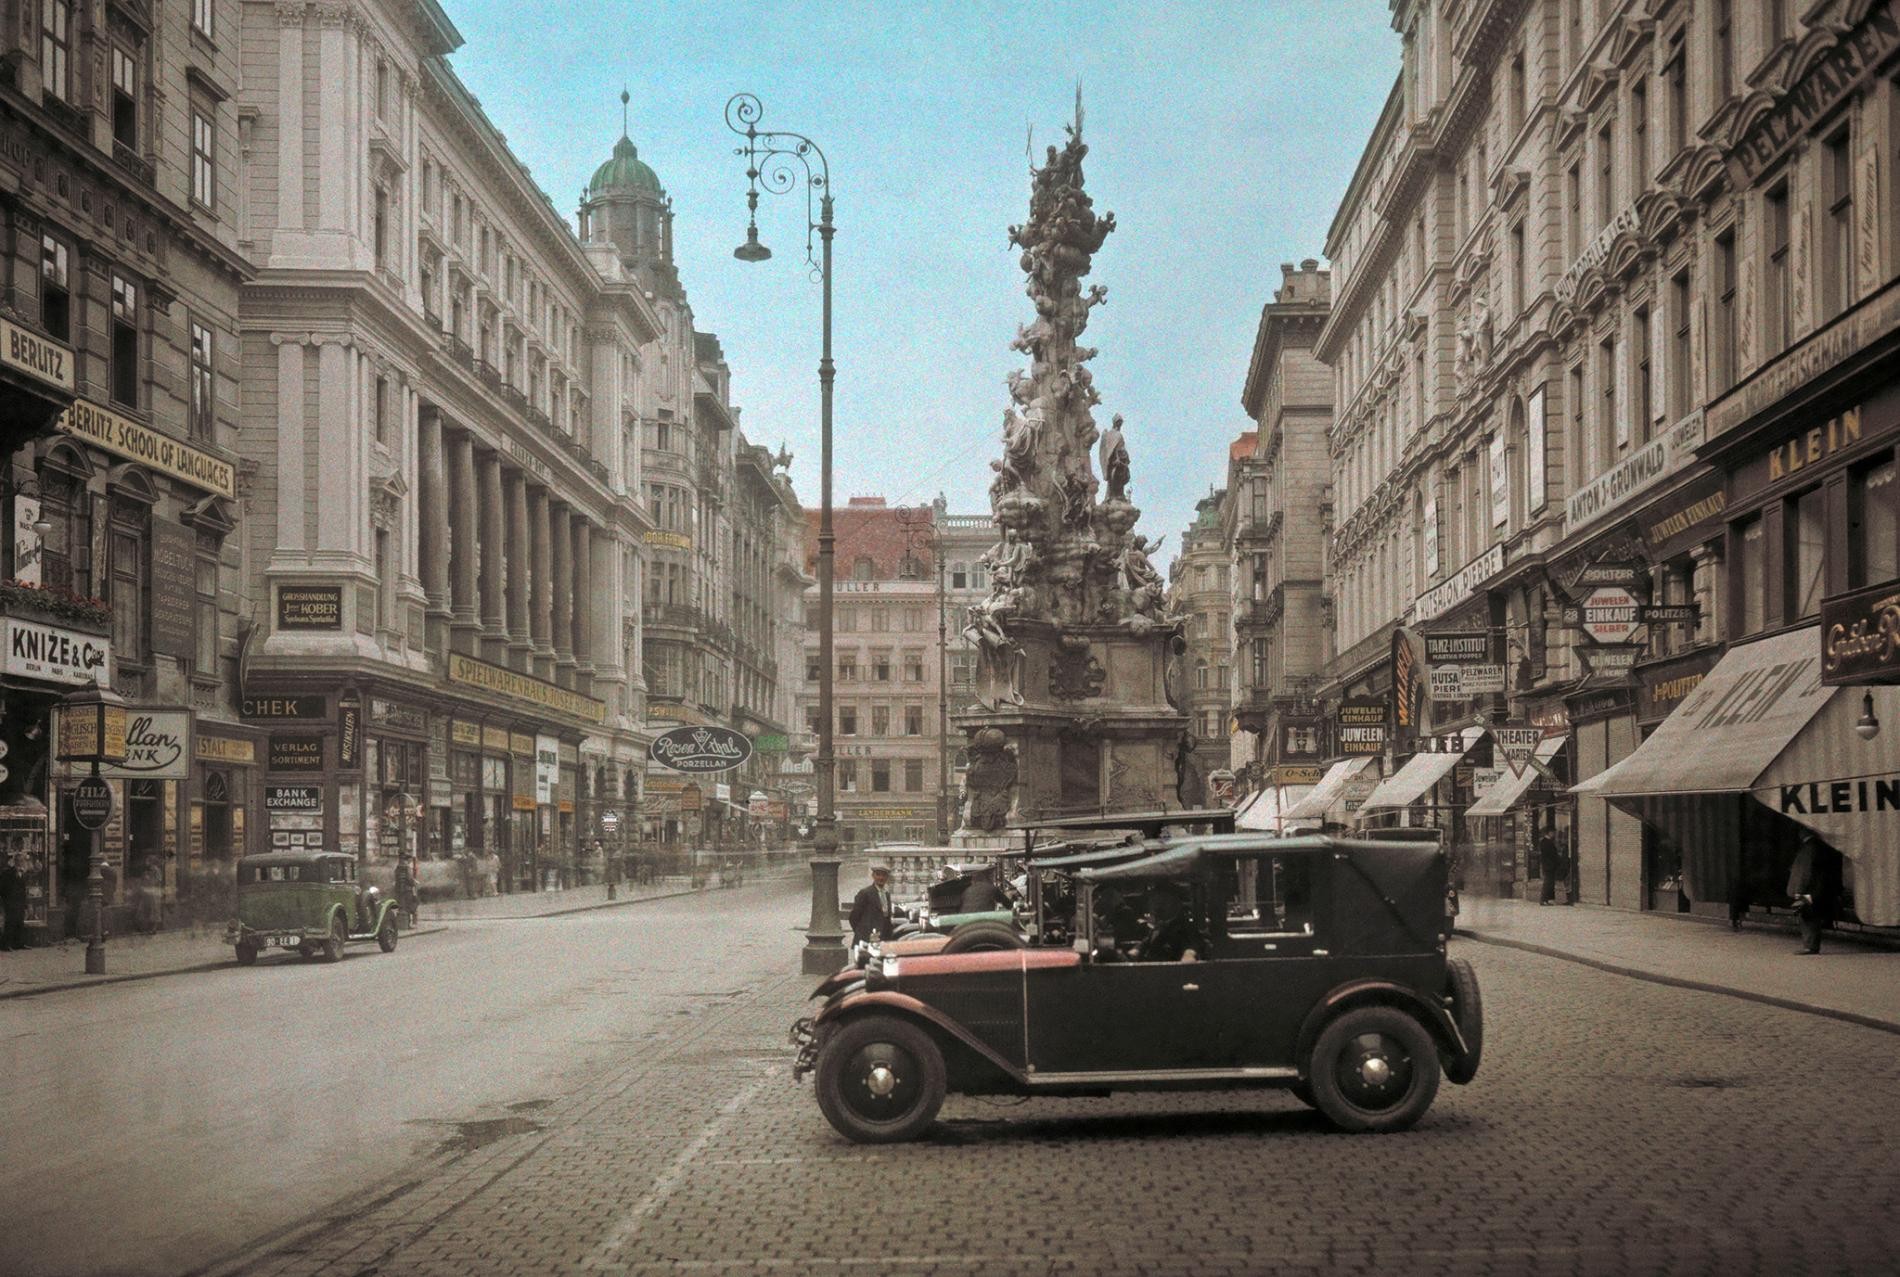 Колонна Святой Троице (Чумная колонна) в Вене, Австрия, 1937. Автохром, фотограф Жюль Жерве-Куртельмон